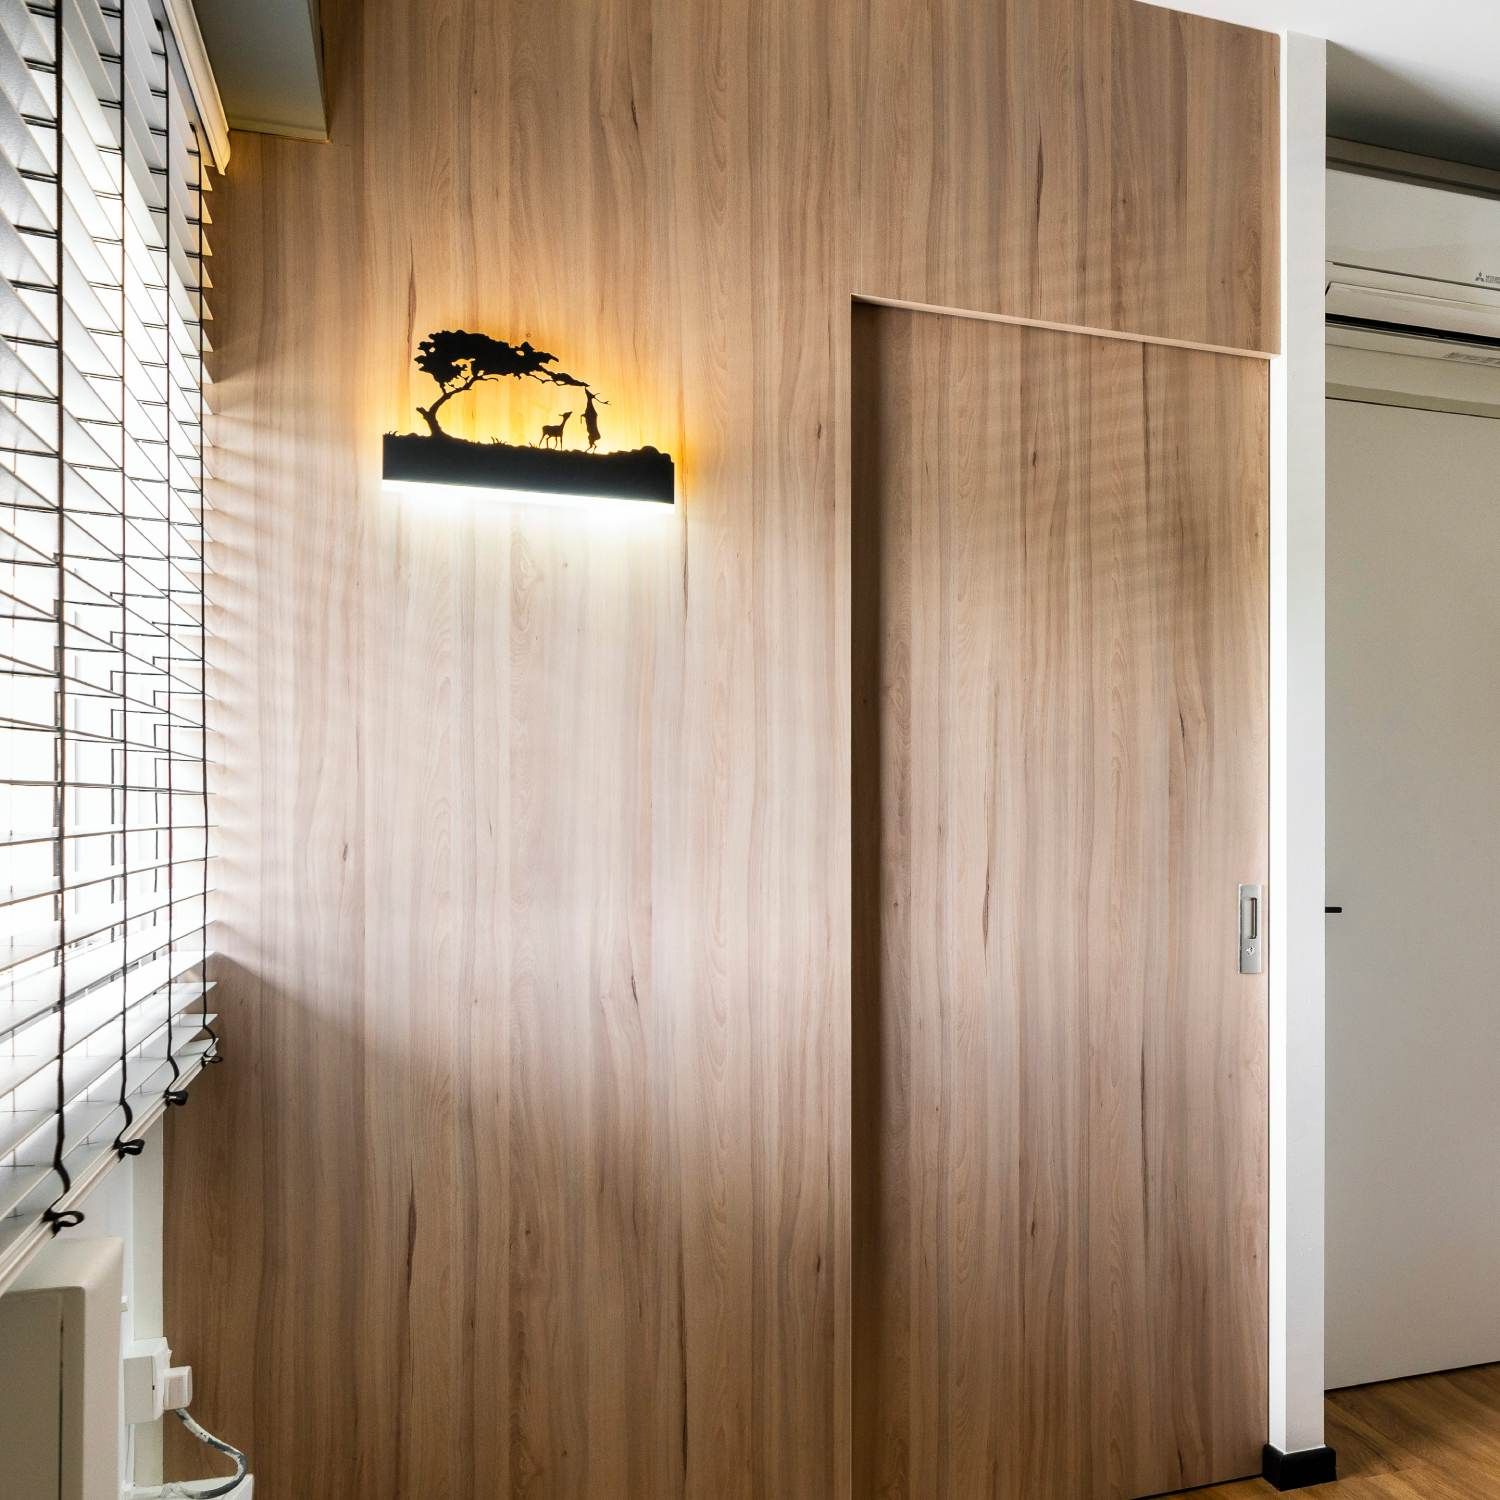 Light Wooden Wall Laminate Design For Modern Houses